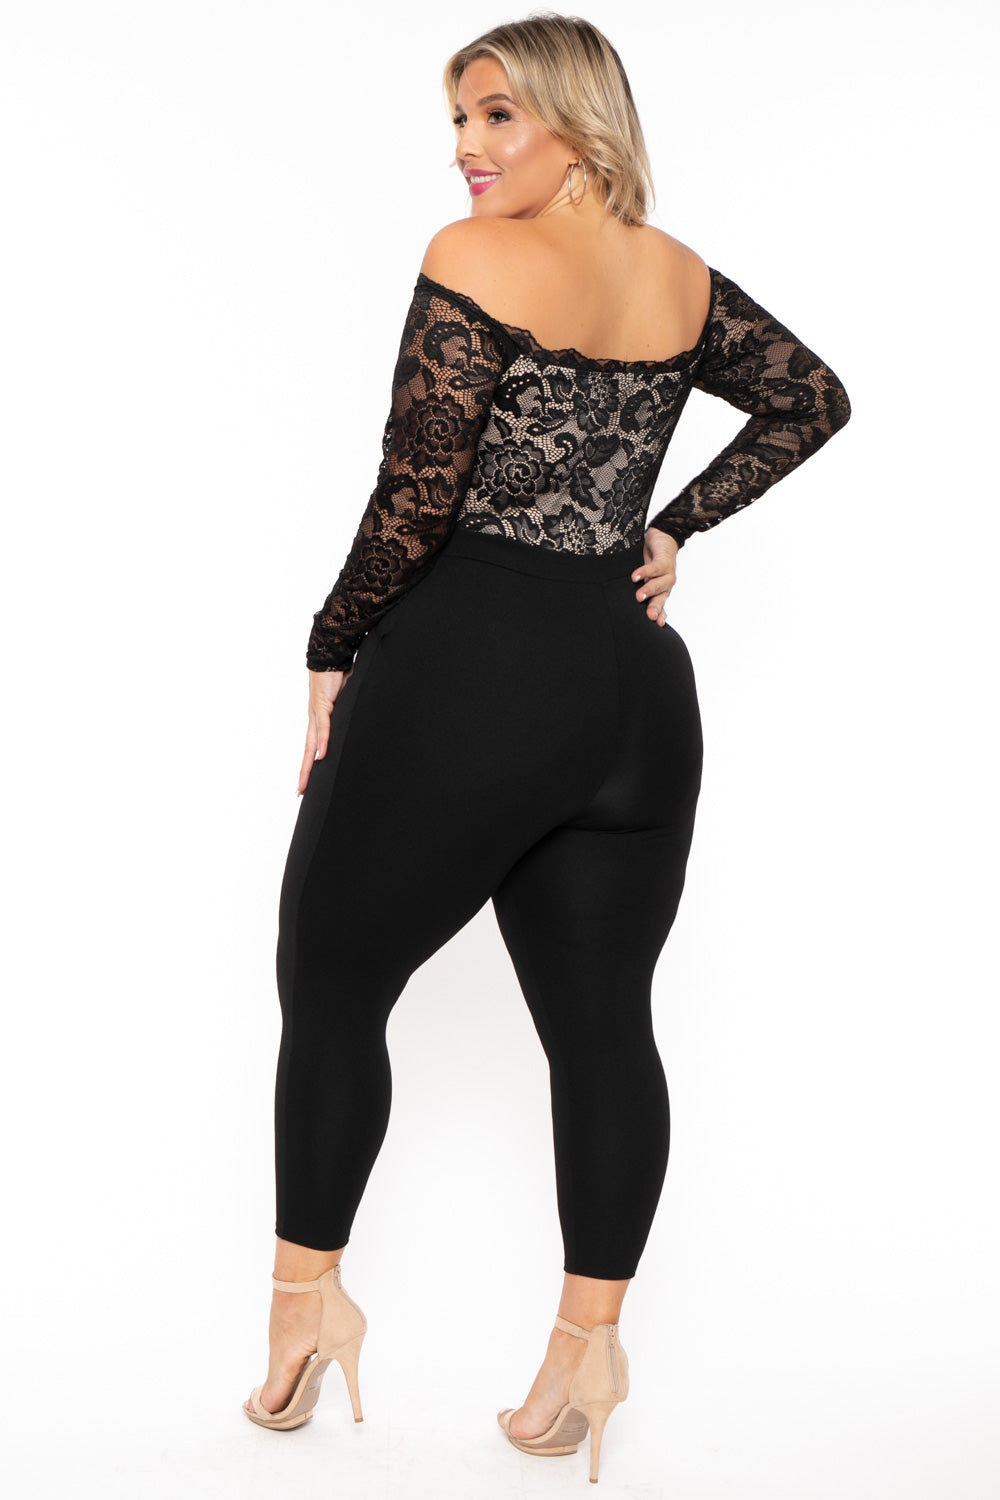 Curvy Sense Jumpsuits and Rompers Plus Size Minnie Lace Top Jumpsuit - Black